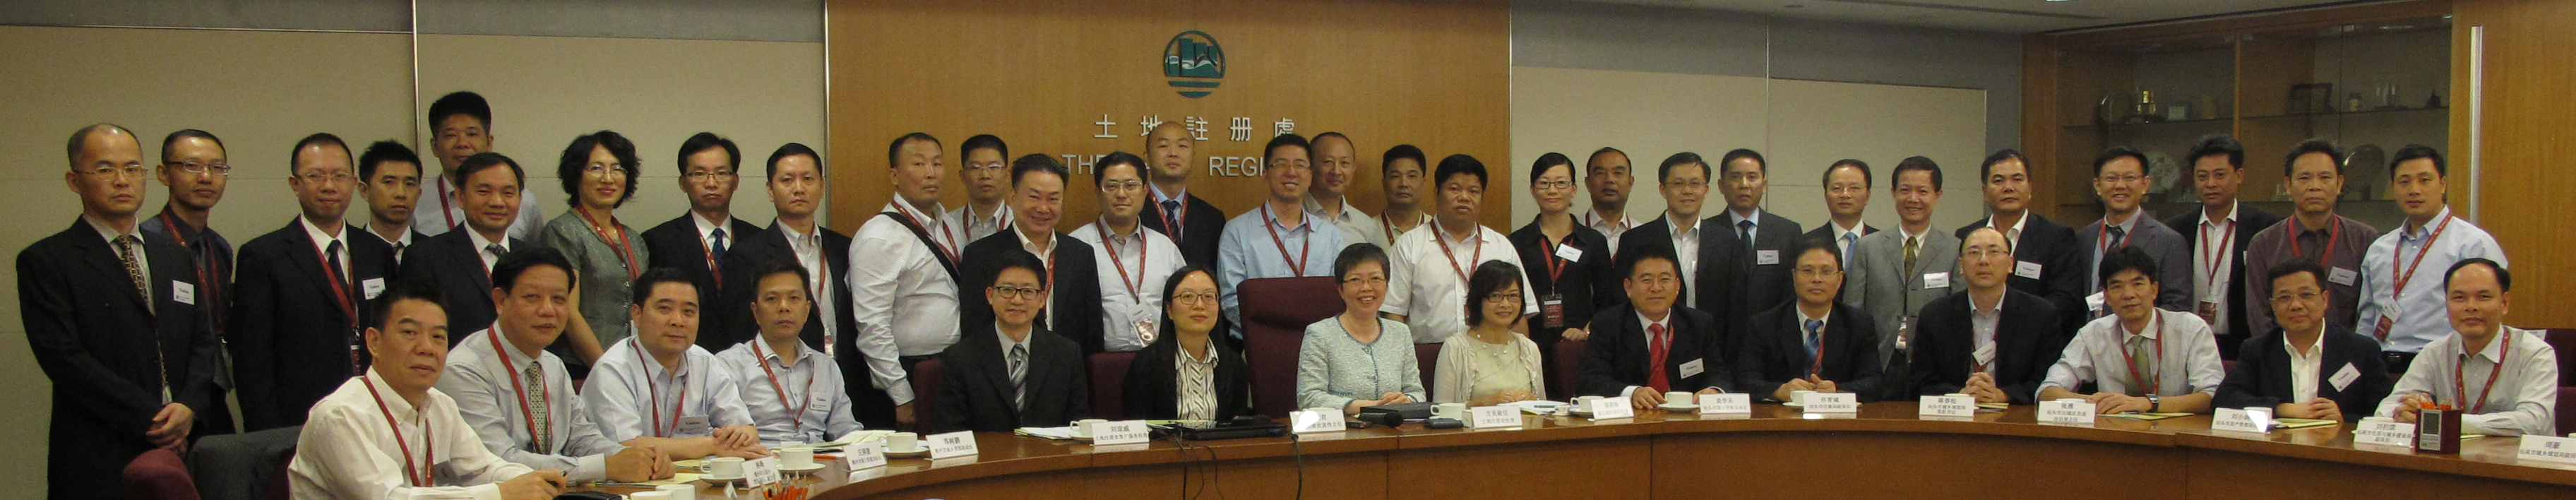 粵 東 地 區 高 級 管 理 人 員 與 土 地 註 冊 處 代 表 合 照